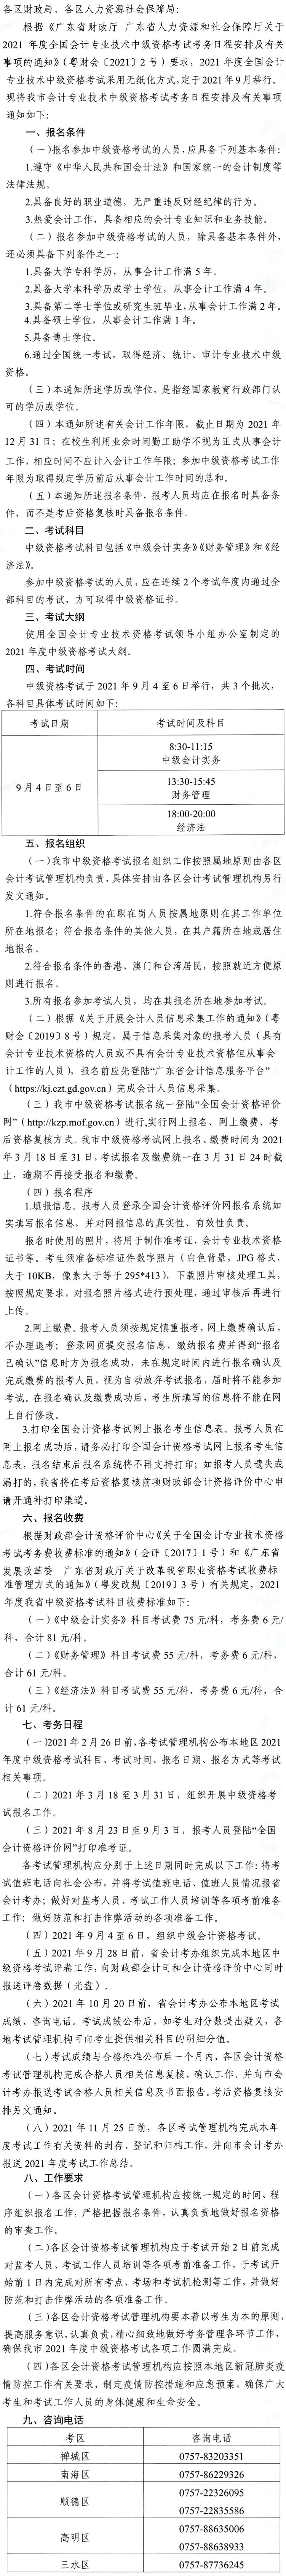 广东佛山2021年中级会计师报名安排通知发布！